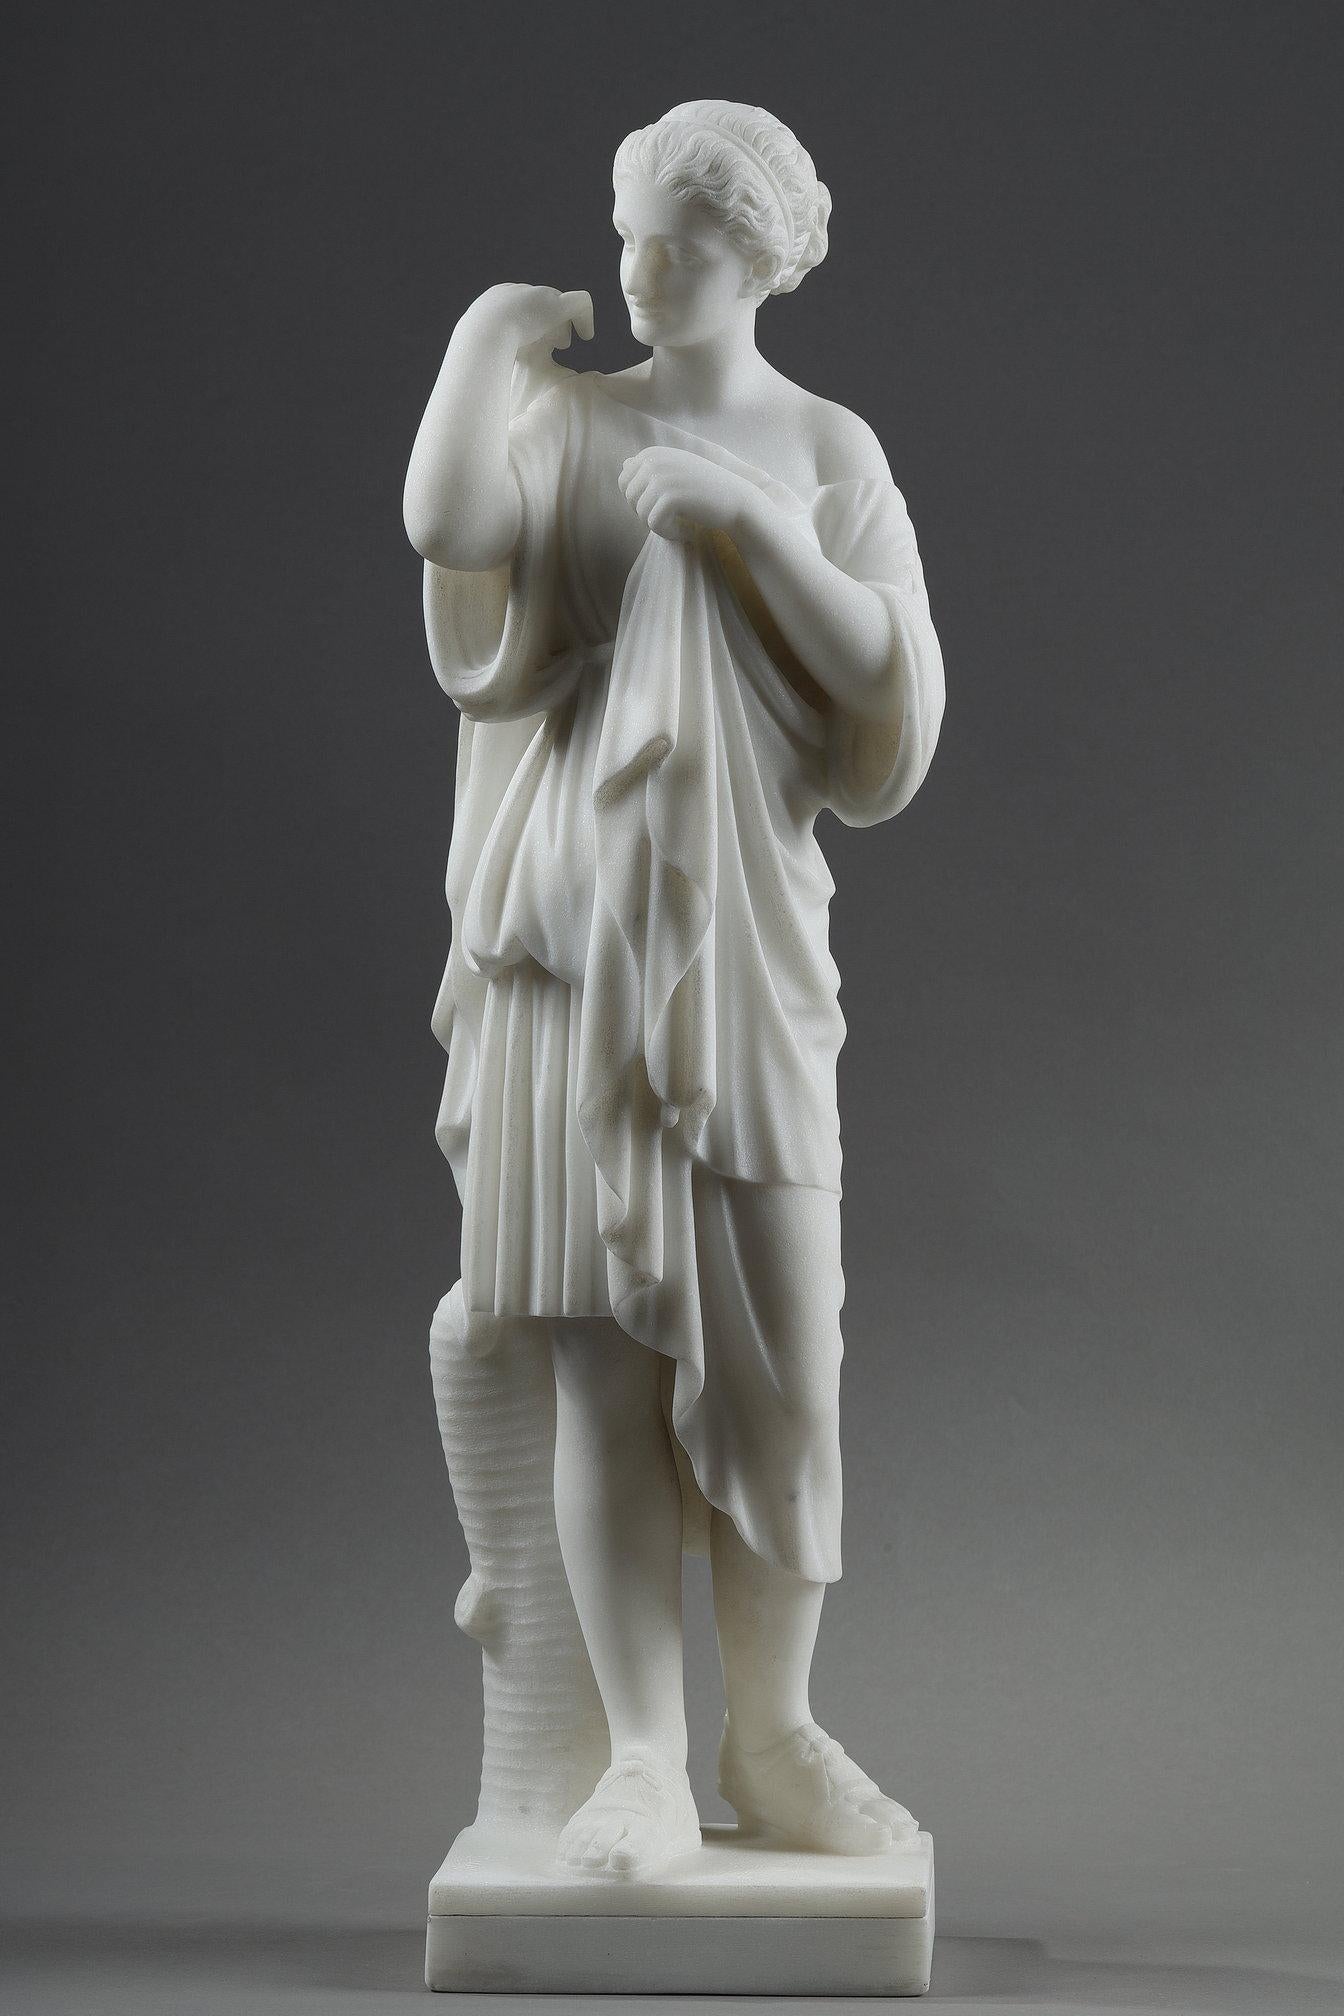 Sculpture en marbre représentant Artemis, déesse de la chasse, portant une tunique courte et des sandales romaines. Elle attache sa cape sur son épaule droite à l'aide d'une fibule.

Notre sculpture signée de Pugi est une réplique de la fin du XIXe